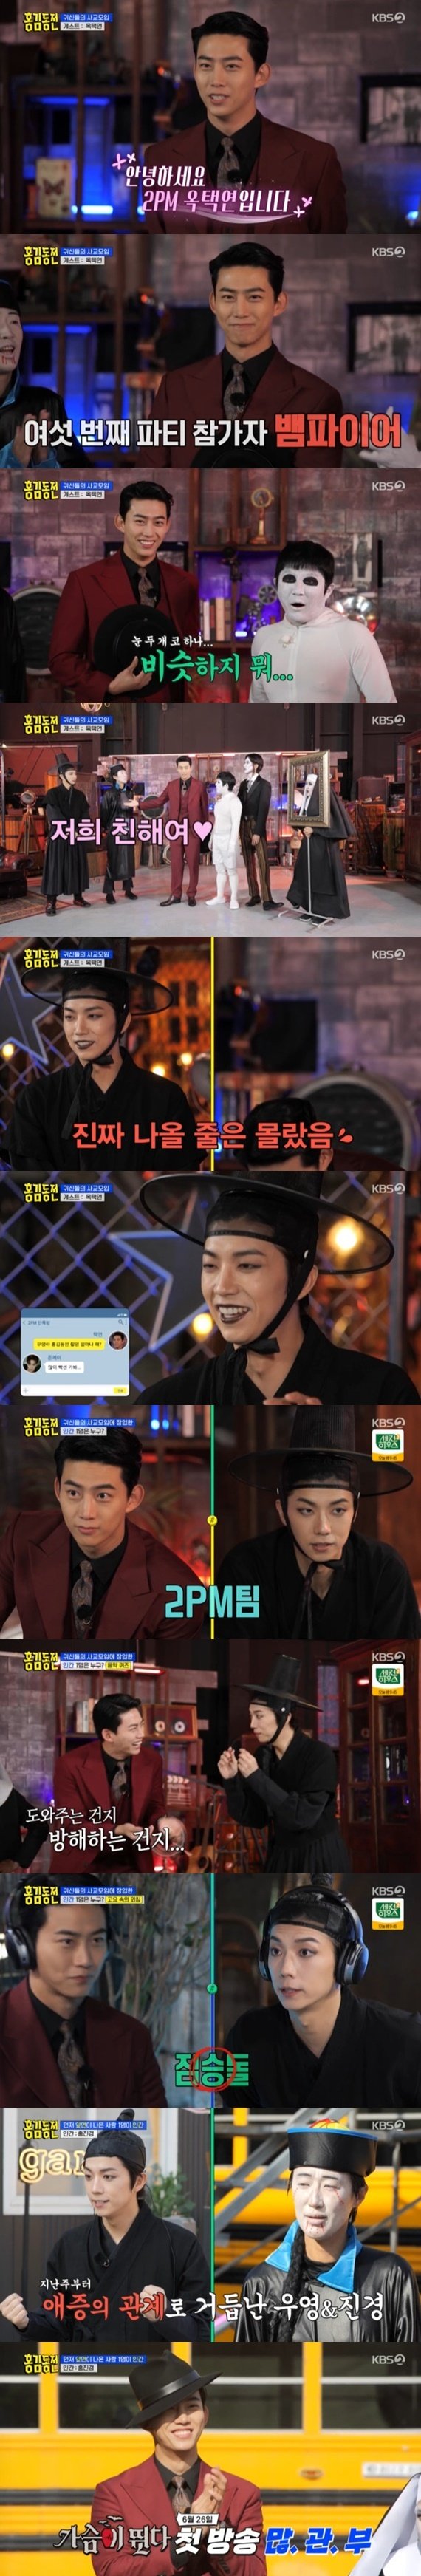 옥택연x장우영, '홍김동전'서 뭉친 2PM…뱀파이어·저승사자 분장 [RE:TV]